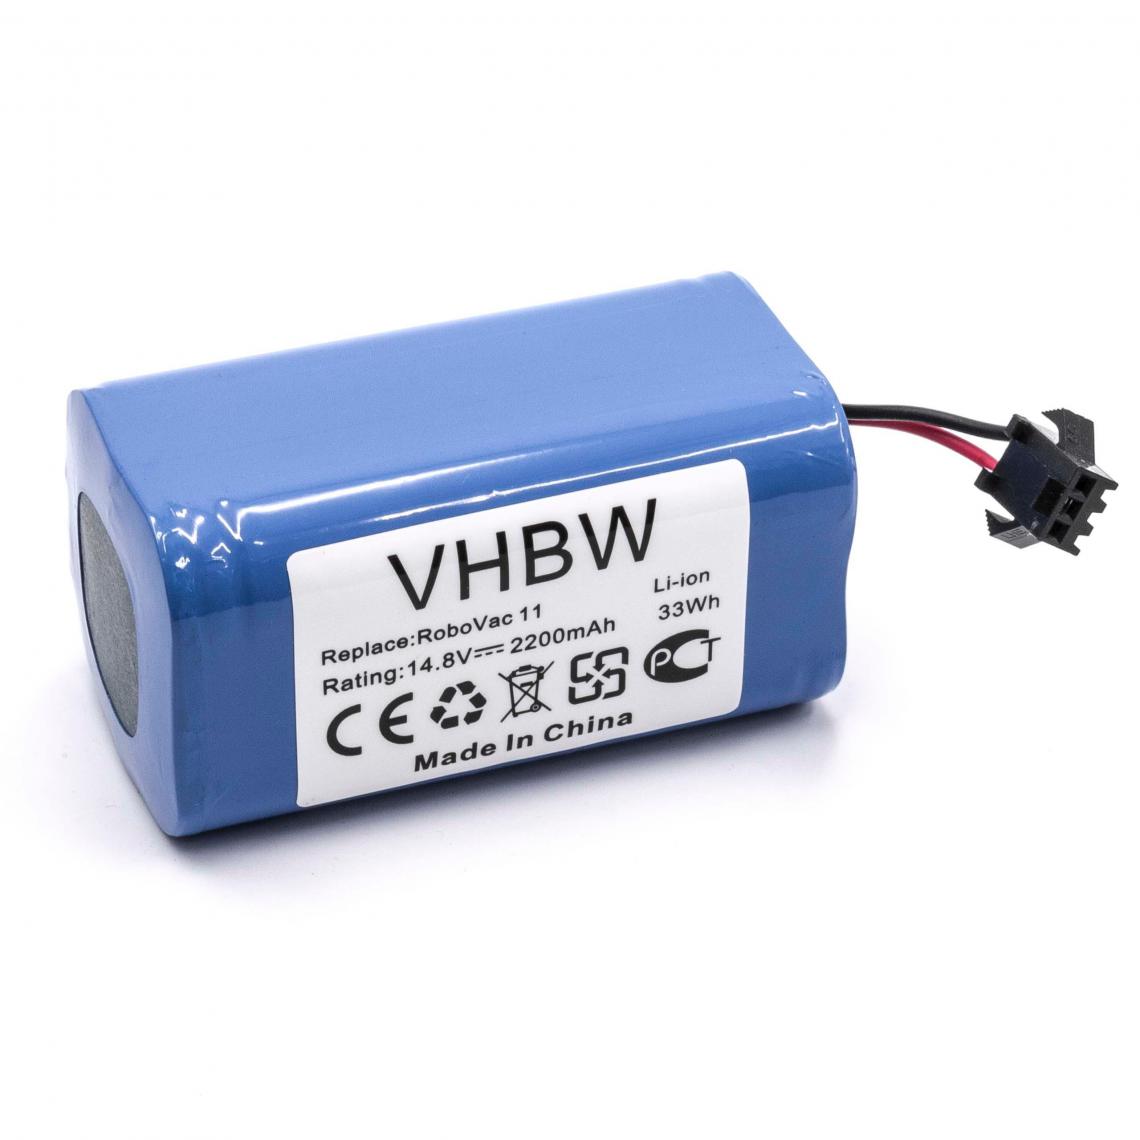 Vhbw - vhbw Batterie compatible avec Tesvor X500 Pro aspirateur, robot électroménager (2200mAh, 14,8V, Li-ion) - Accessoire entretien des sols